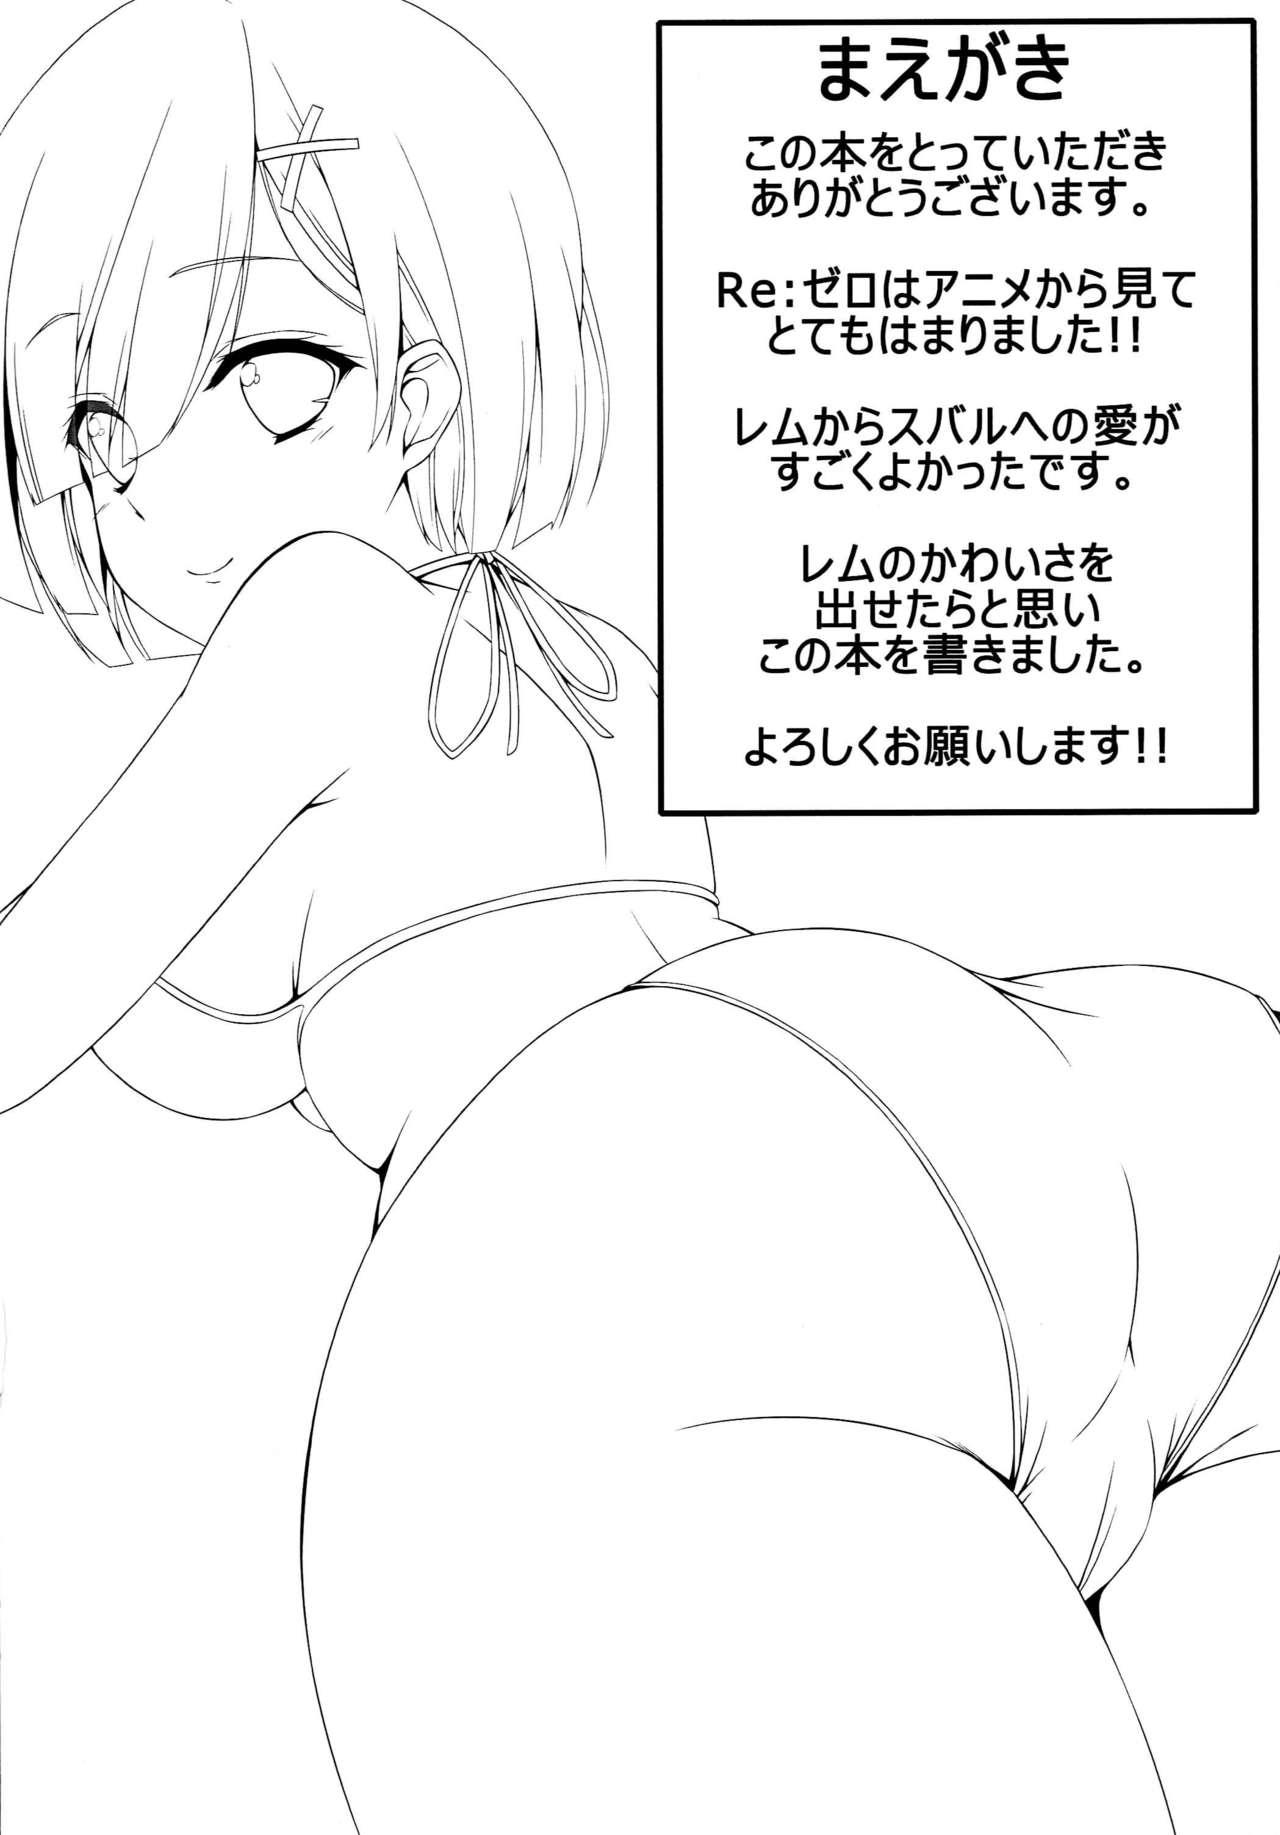 Skirt Itsumo Issho ni - Re zero kara hajimeru isekai seikatsu Sloppy - Page 3